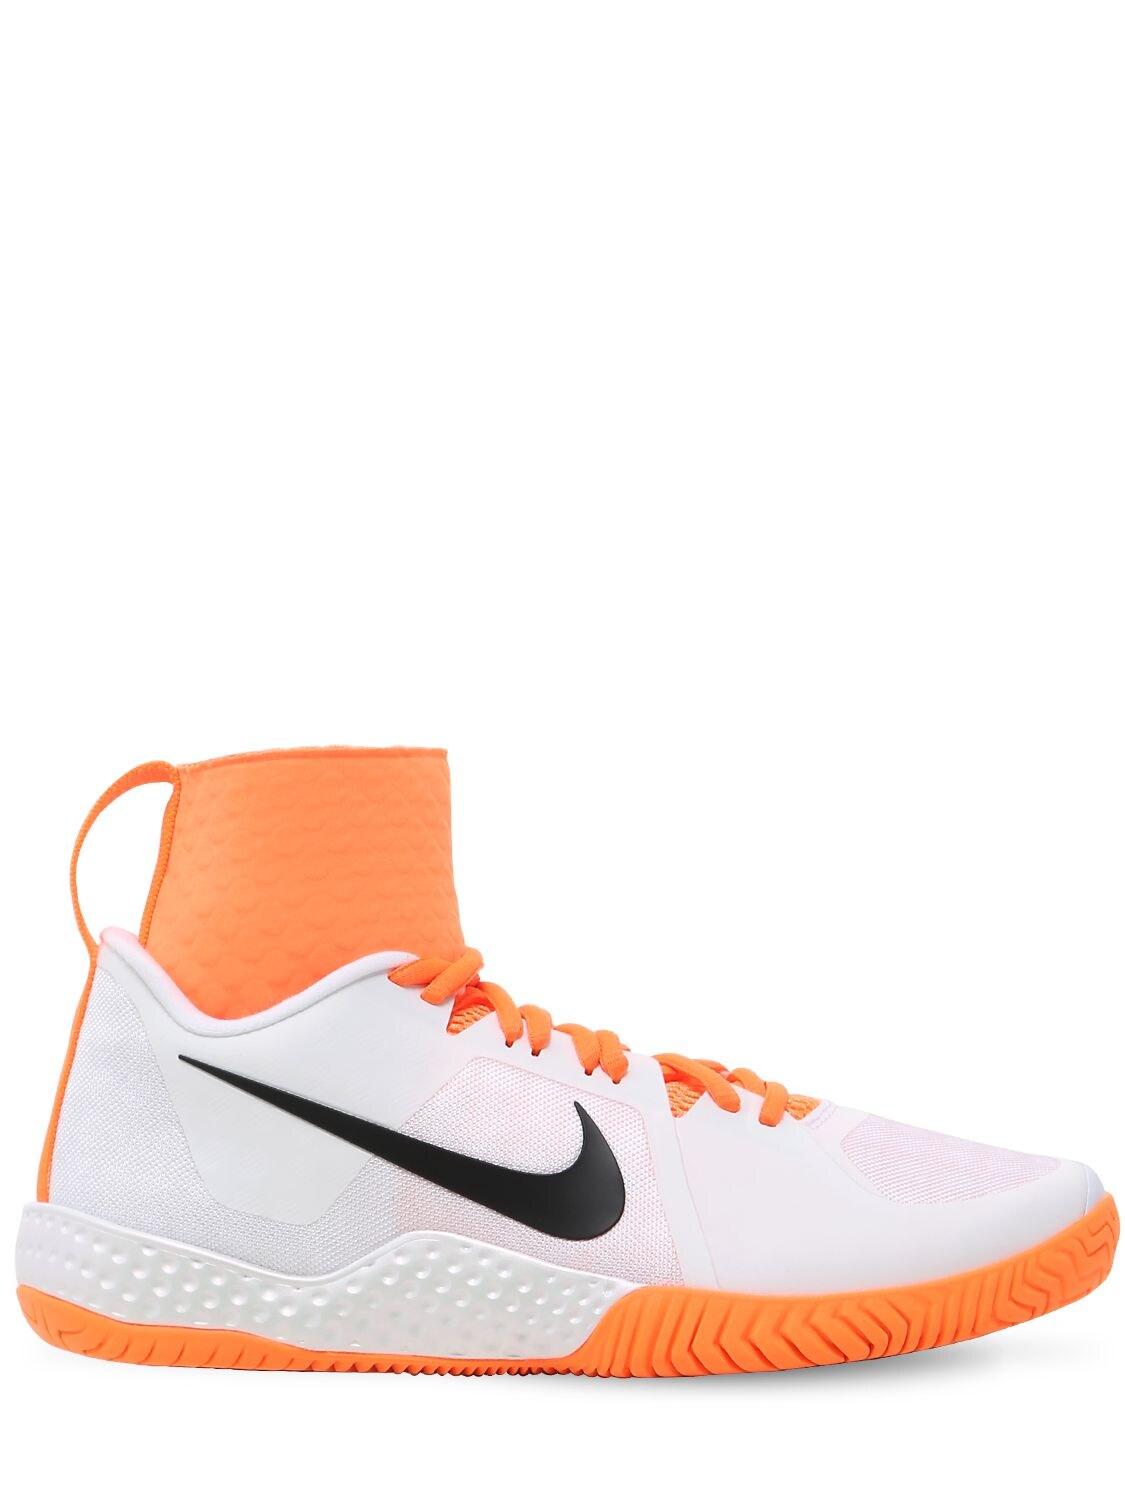 Nike Serena Flare Tennis Sneakers in Orange |